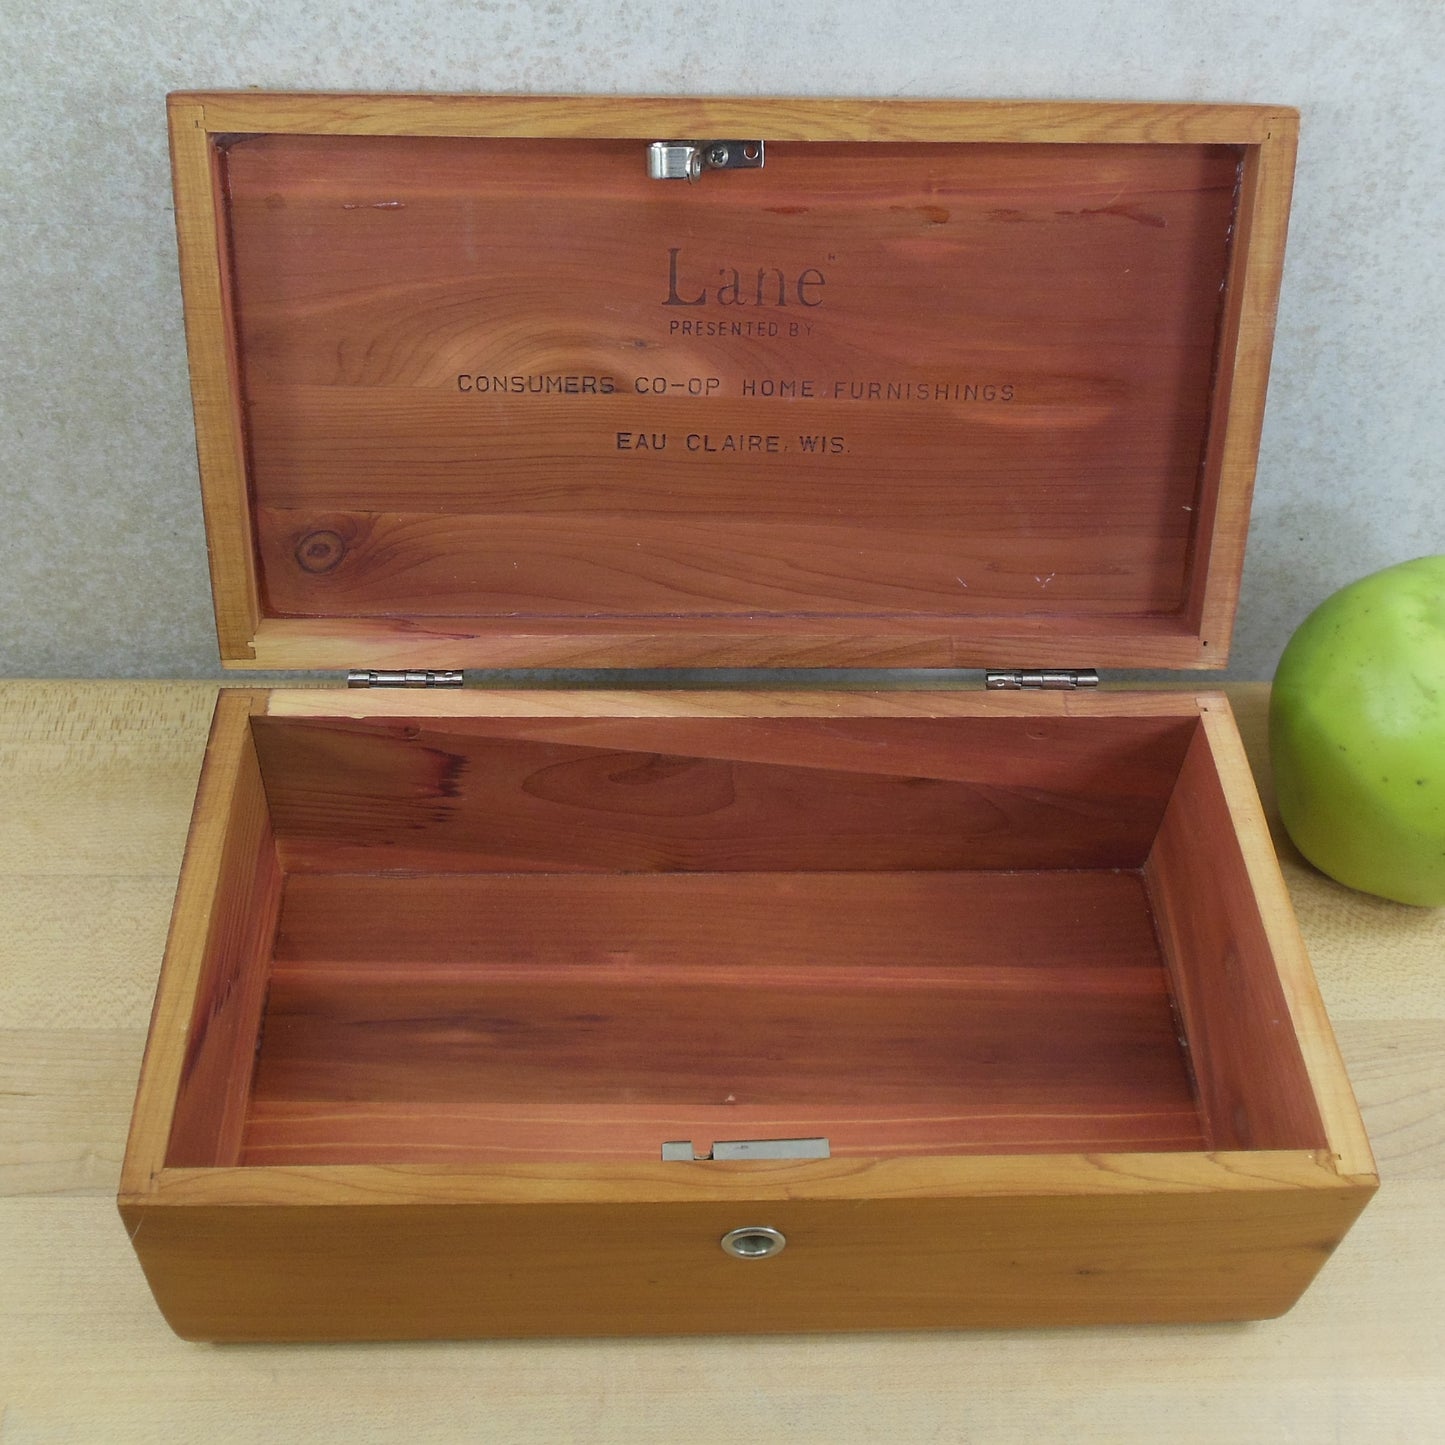 Lane Miniature Cedar Chest Box - Consumer Co-Op Eau Claire WI vintage